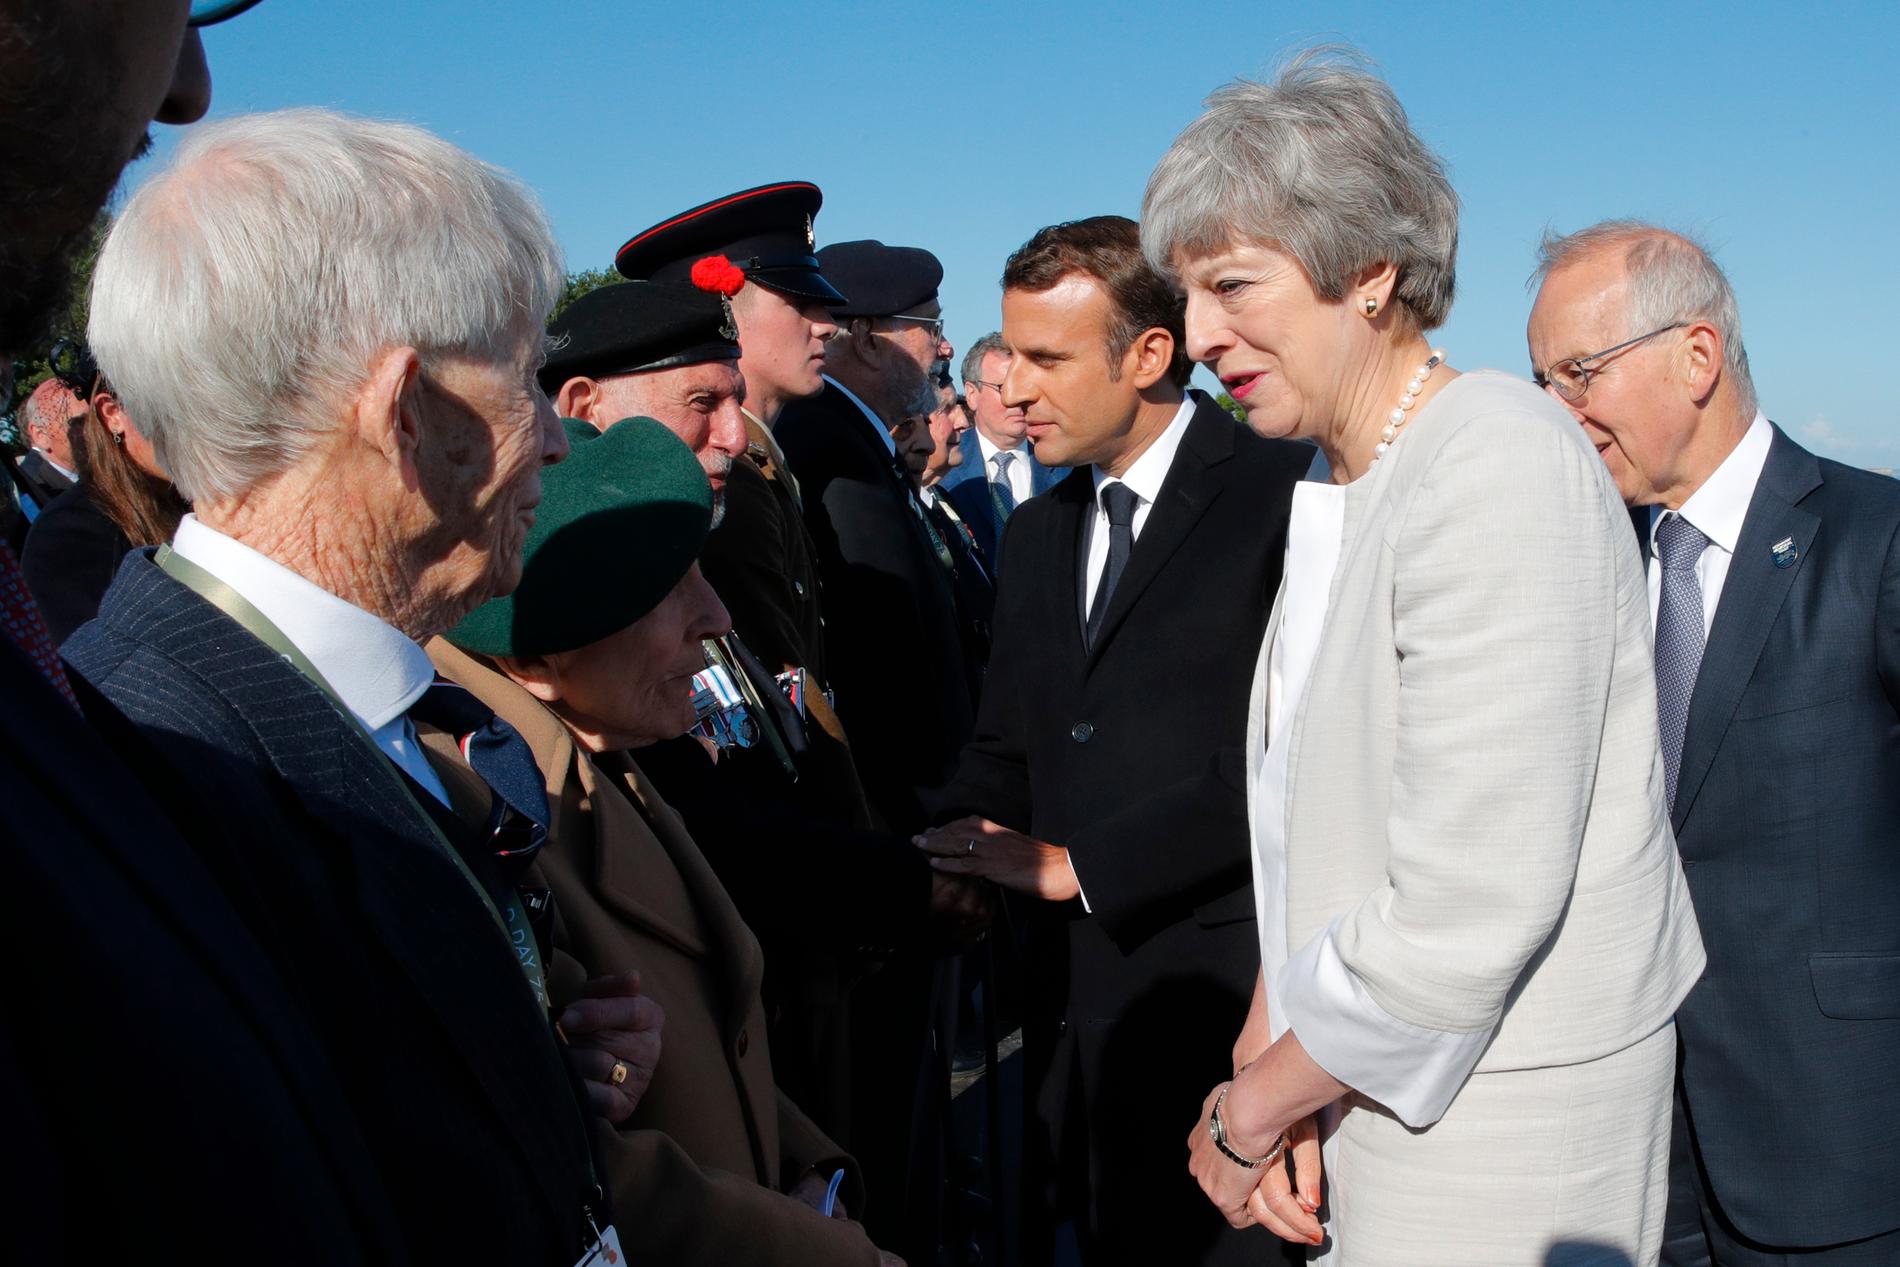 Storbritanniens premiärminister Theresa May och Frankrikes president Emmanuel Macron hälsar på veteraner som var med under D-dagen den 6 juni 1944.